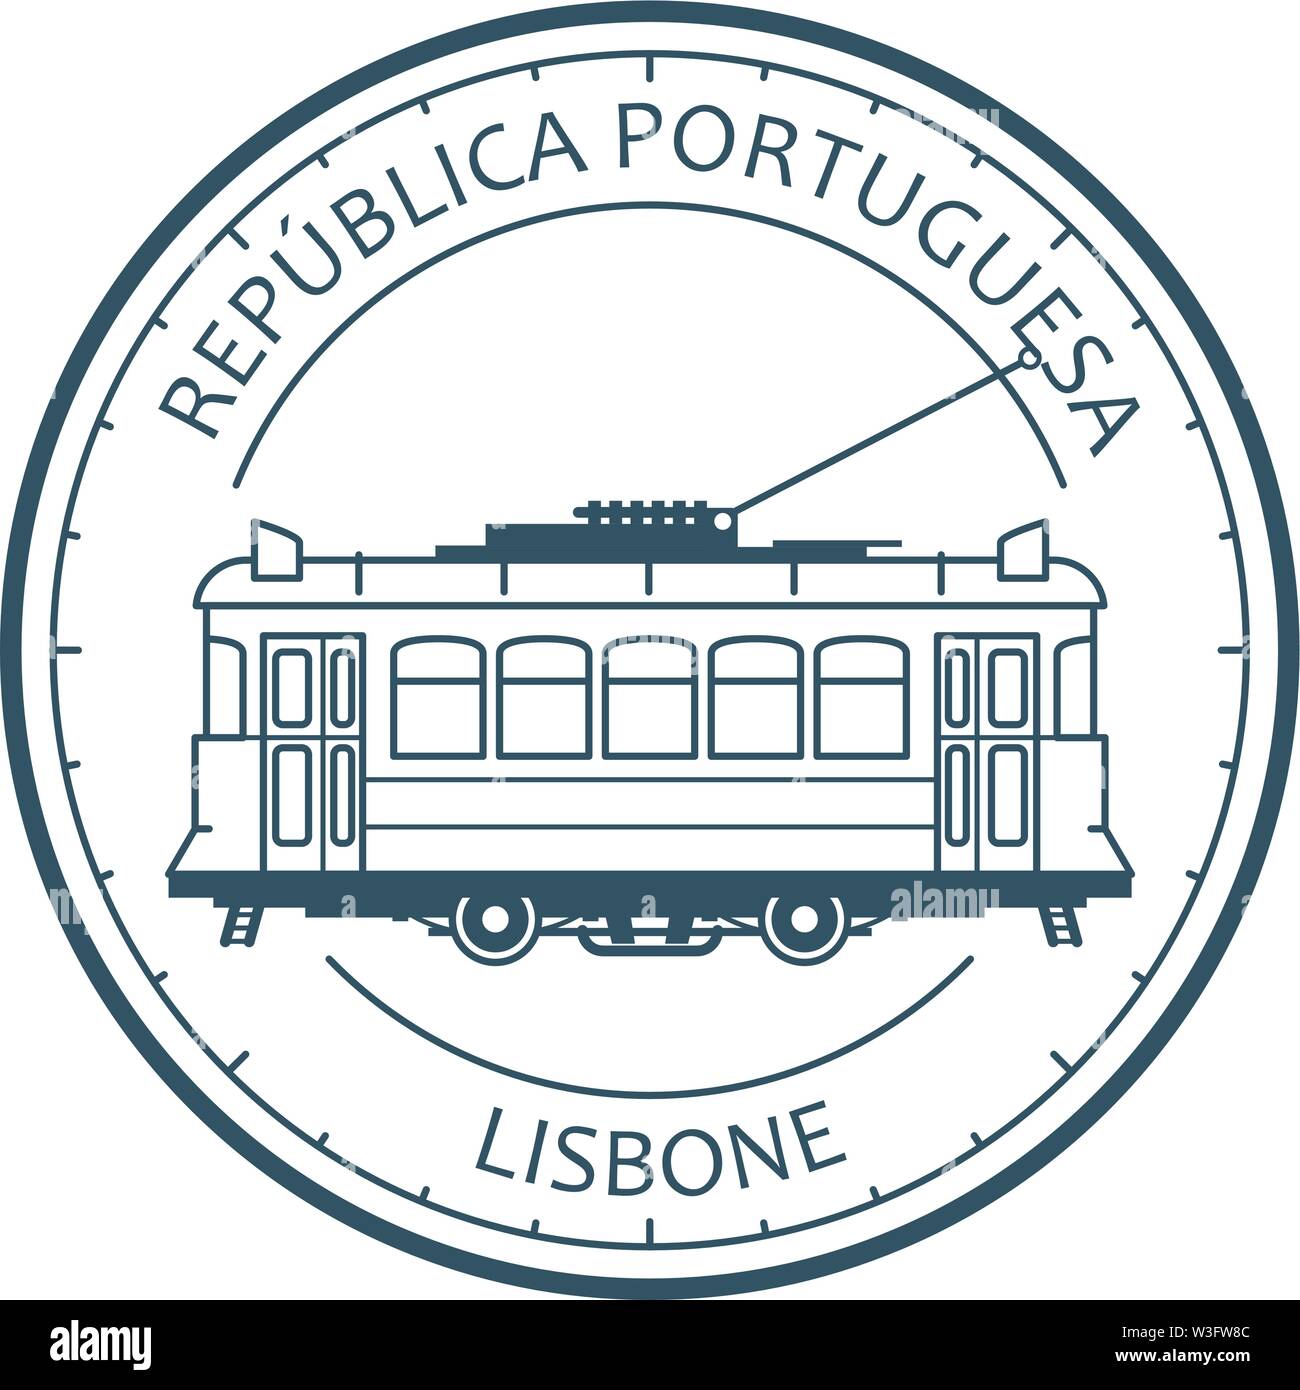 Vintage city tram - tramway in Lisbon, Portugal emblem, outline of retro tramcar Stock Vector